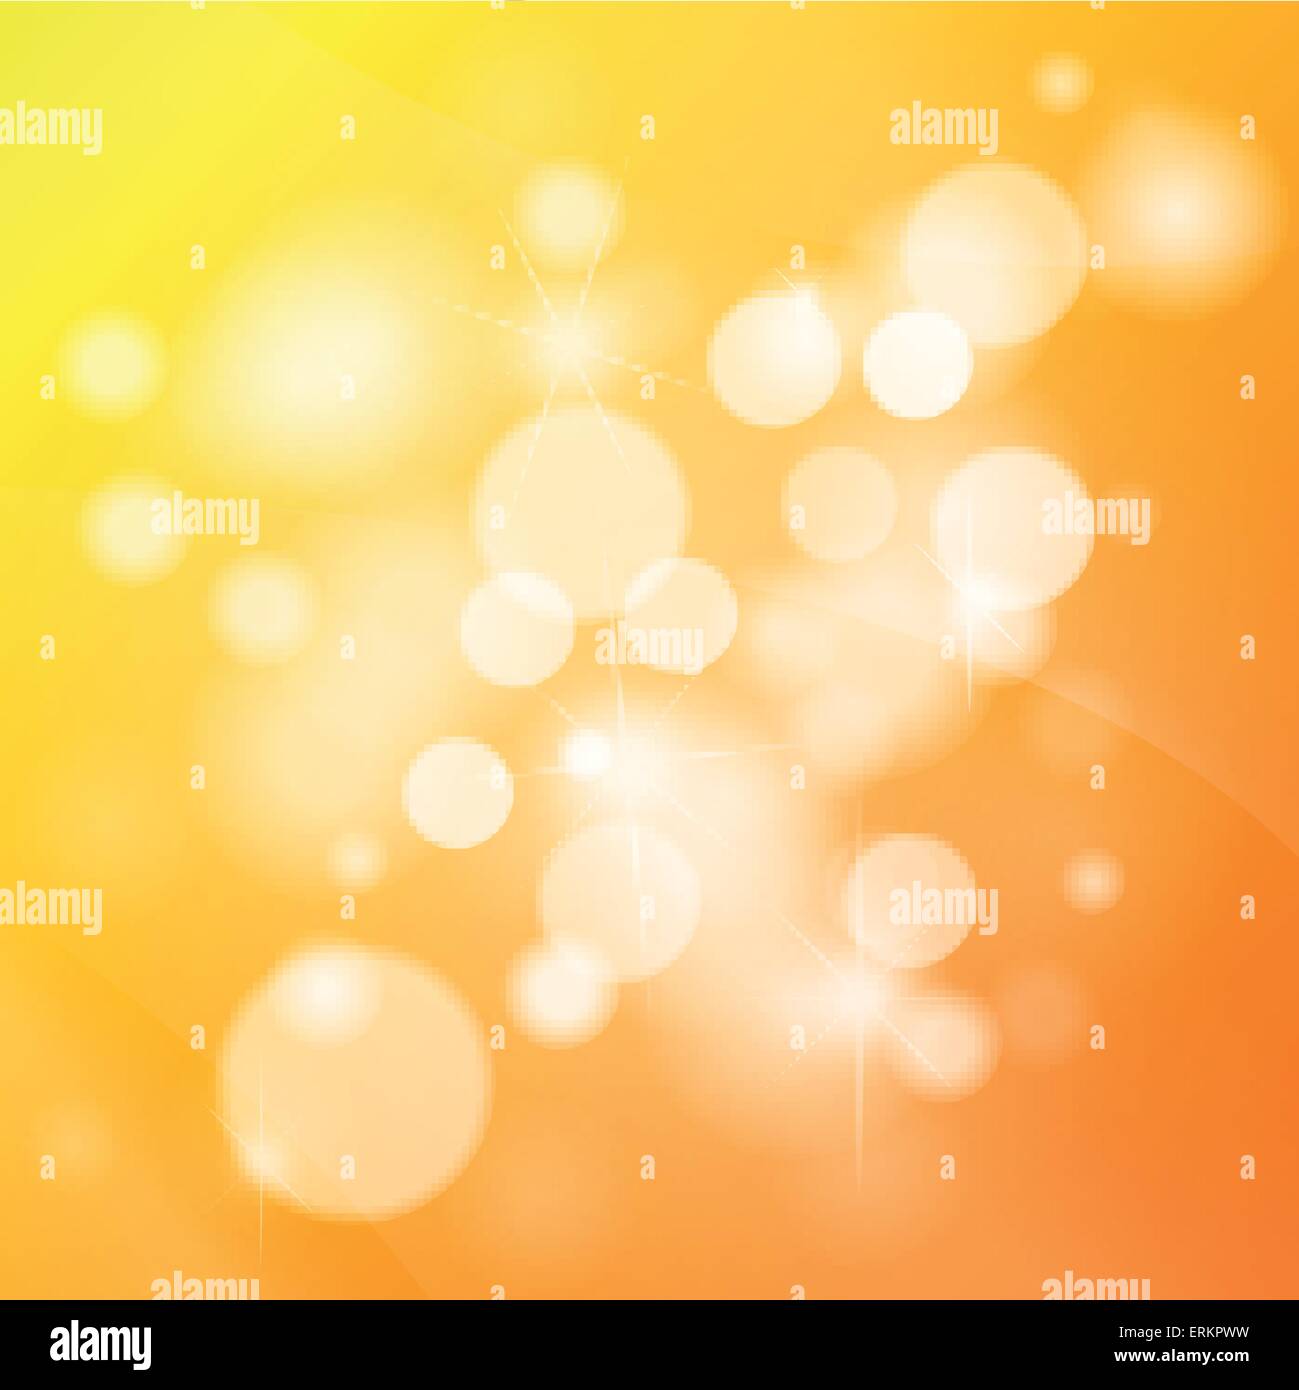 Vektor-Illustration von abstrakten hellen orange Hintergrund Stock Vektor